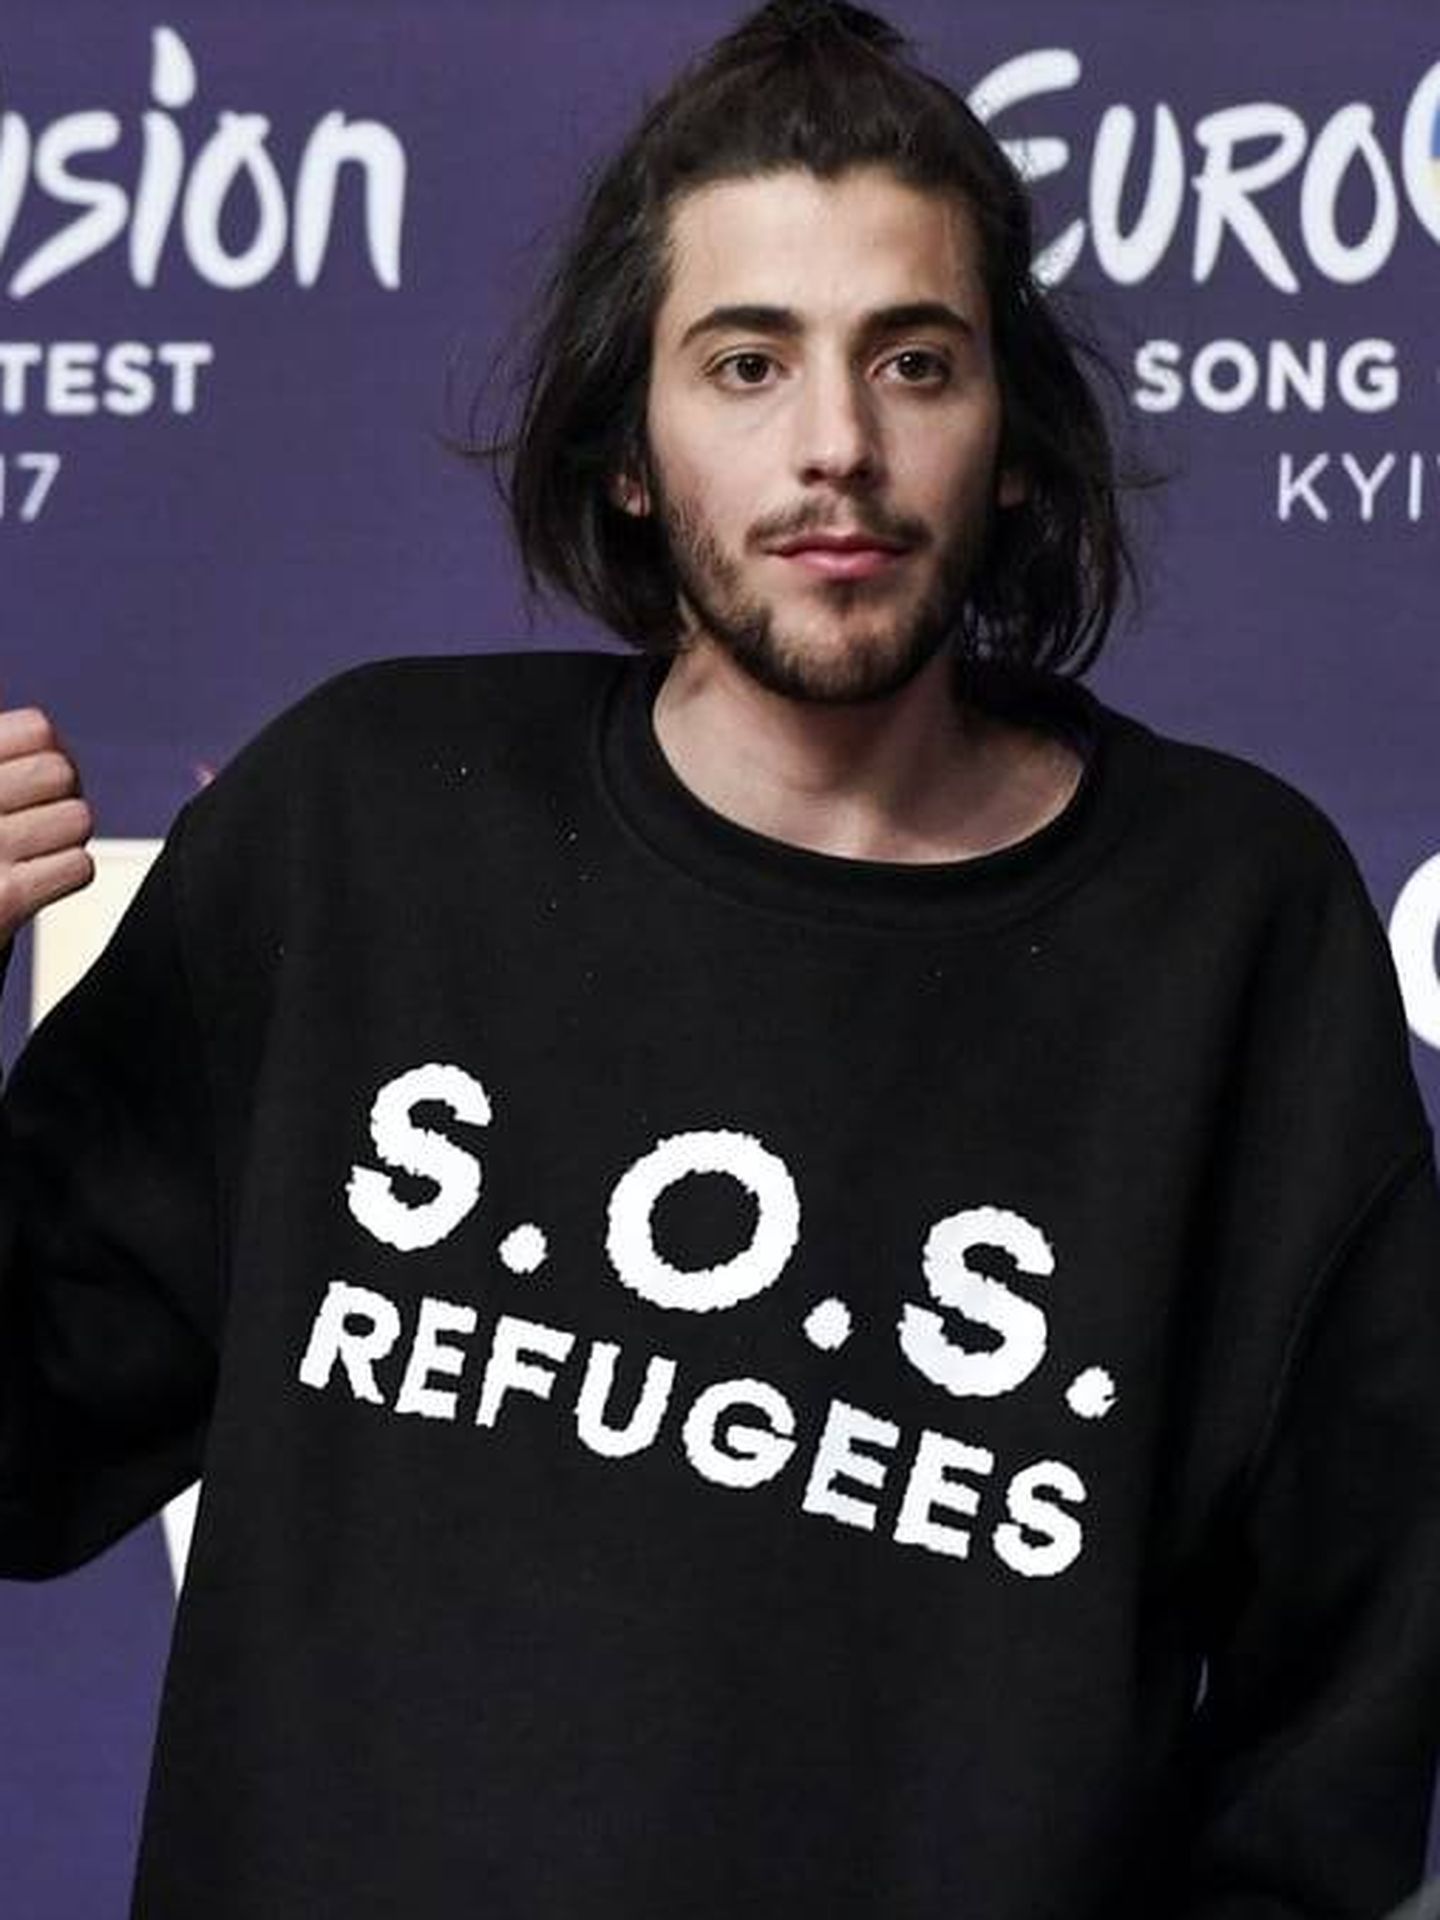 Salvador Sobral acude vestido con una camiseta en favor a los refugiados en Eurovisión 2017